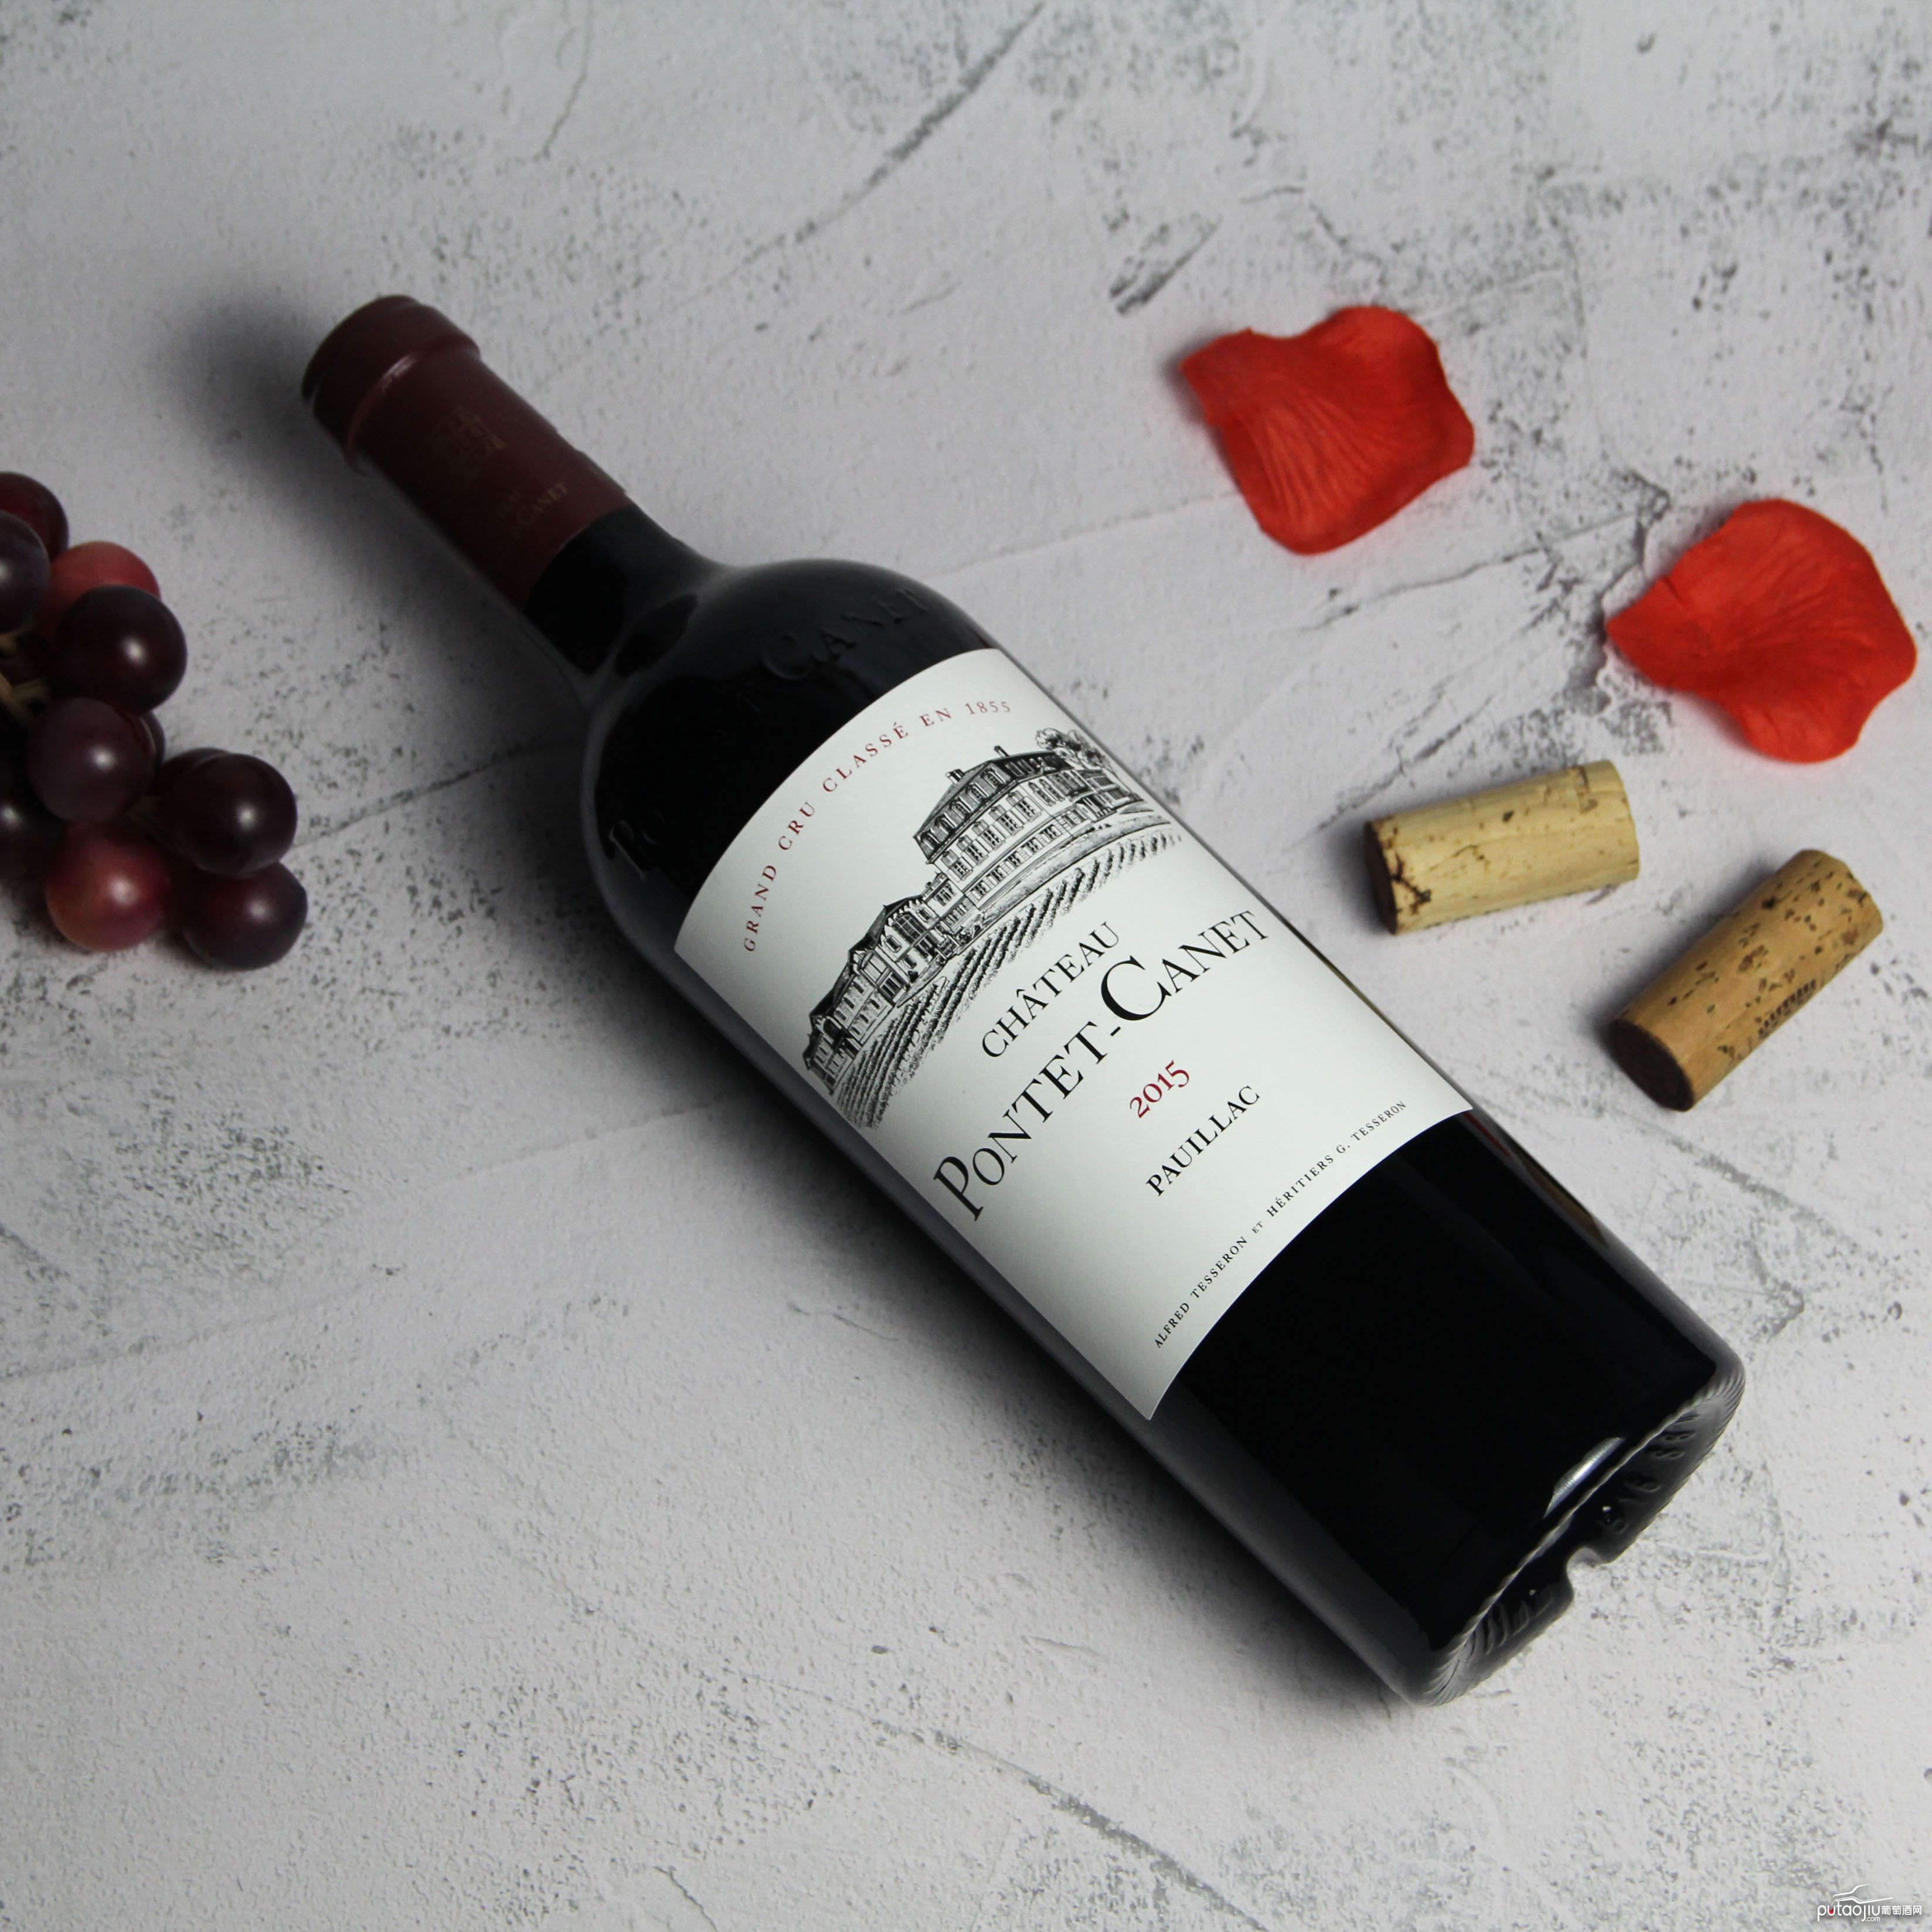 法国波尔多波亚克庞特卡内酒庄红葡萄酒红酒2015